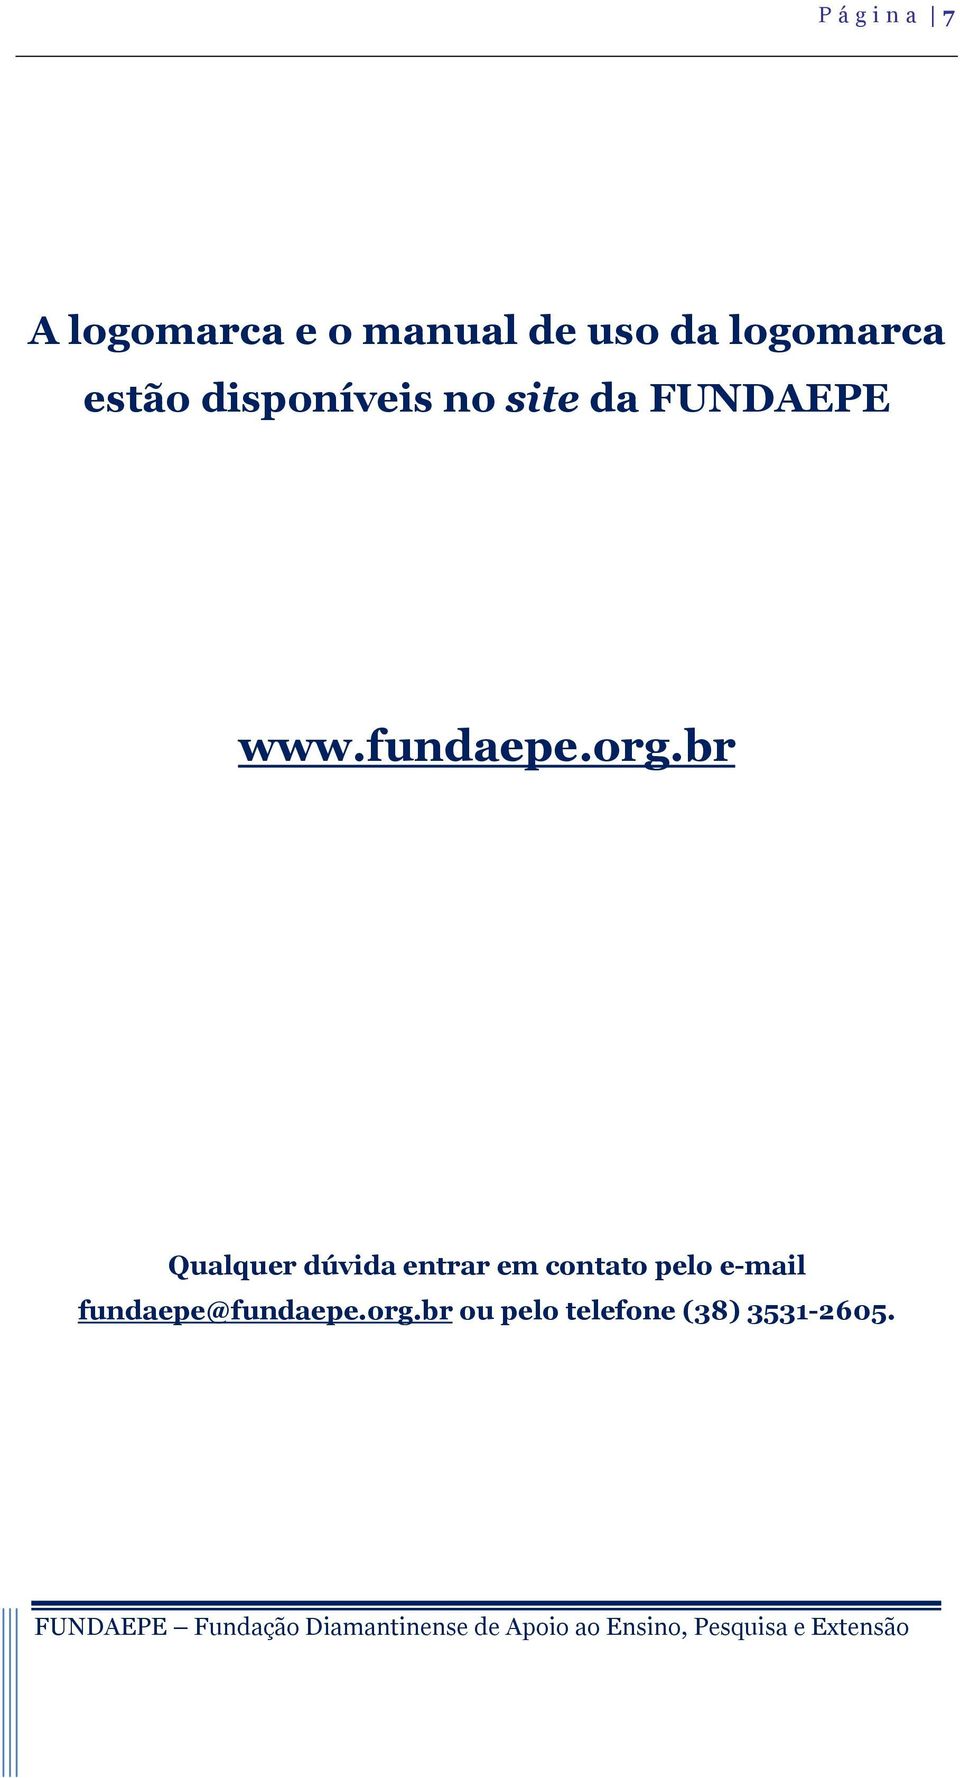 fundaepe.org.